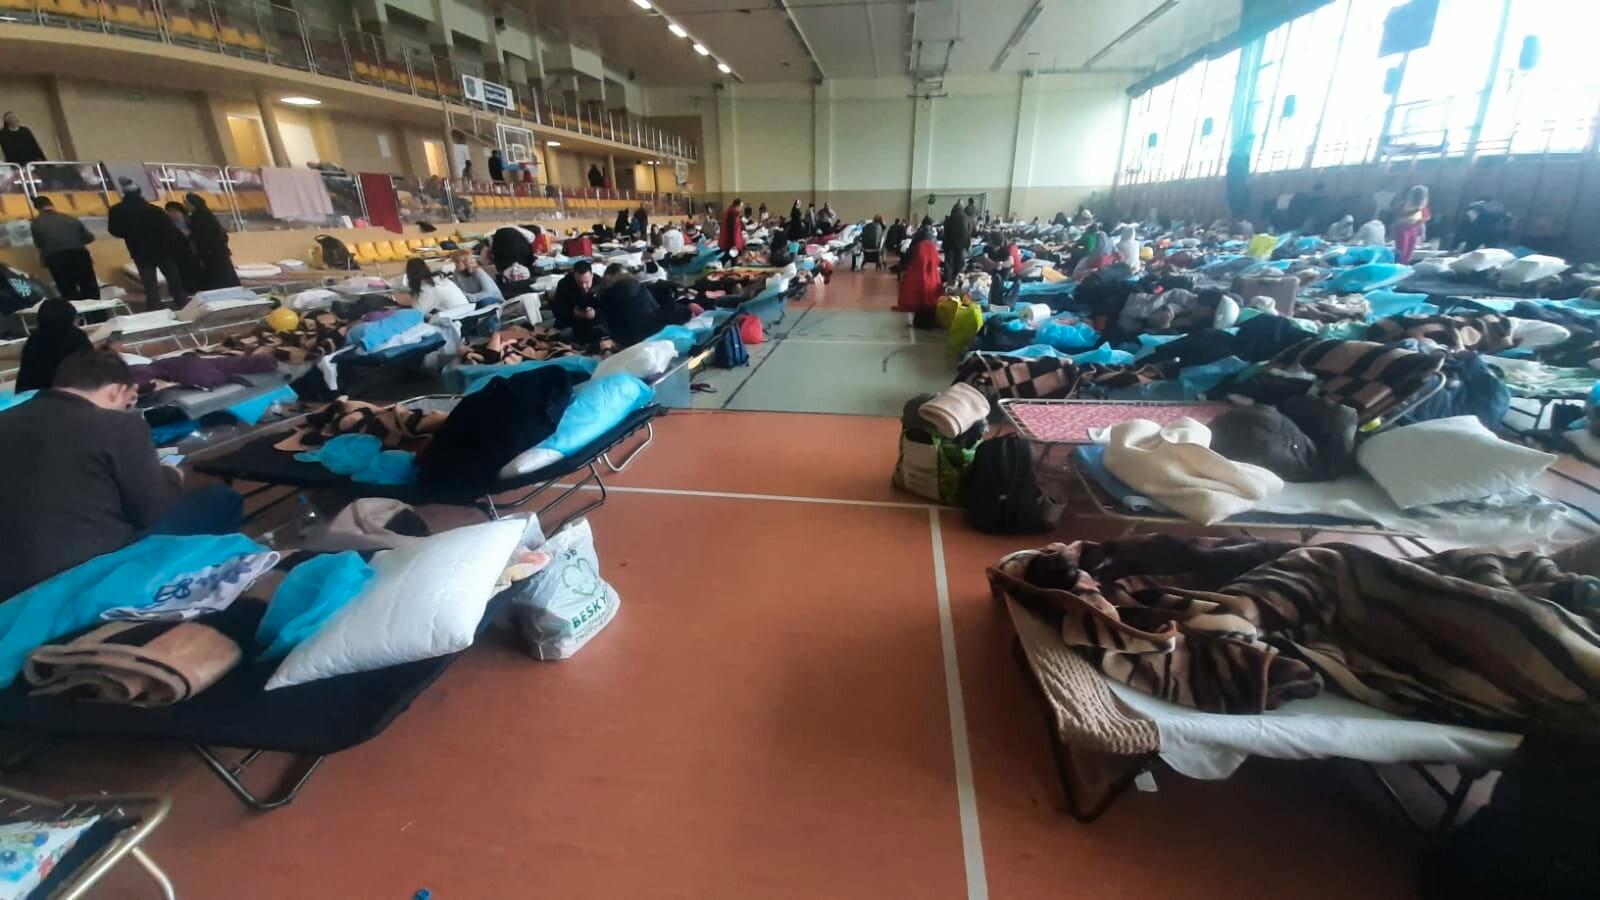 Över 1 000 ukrainare har hittills fått hjälp vid det här välkomstcentret i Podkarpacie, i Polen. 23 av dem har behövt vård av Röda korset på plats.